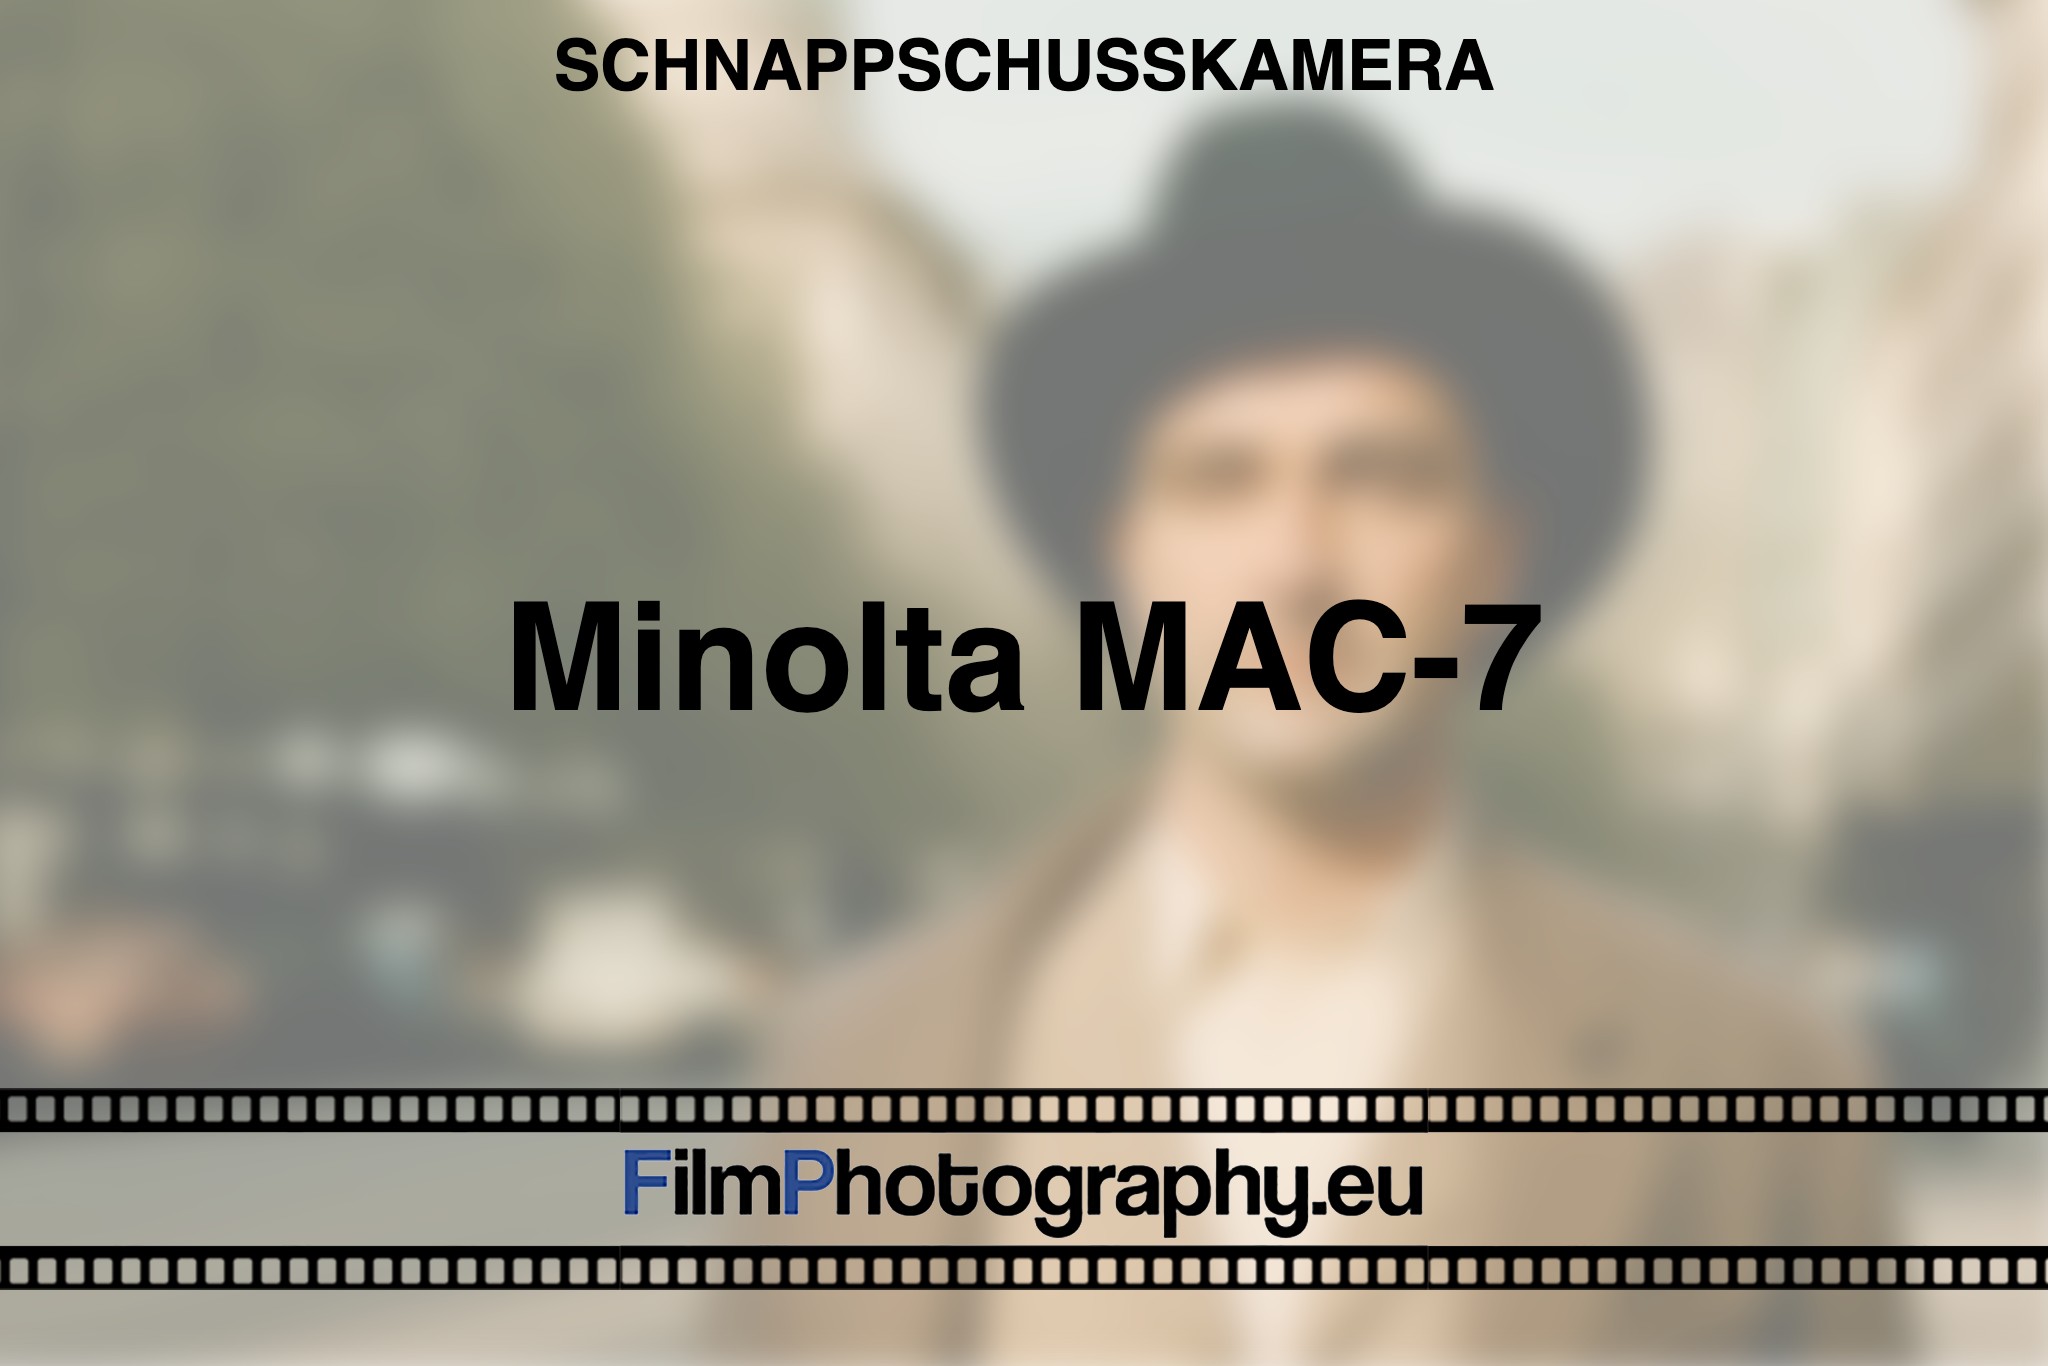 minolta-mac-7-schnappschusskamera-bnv